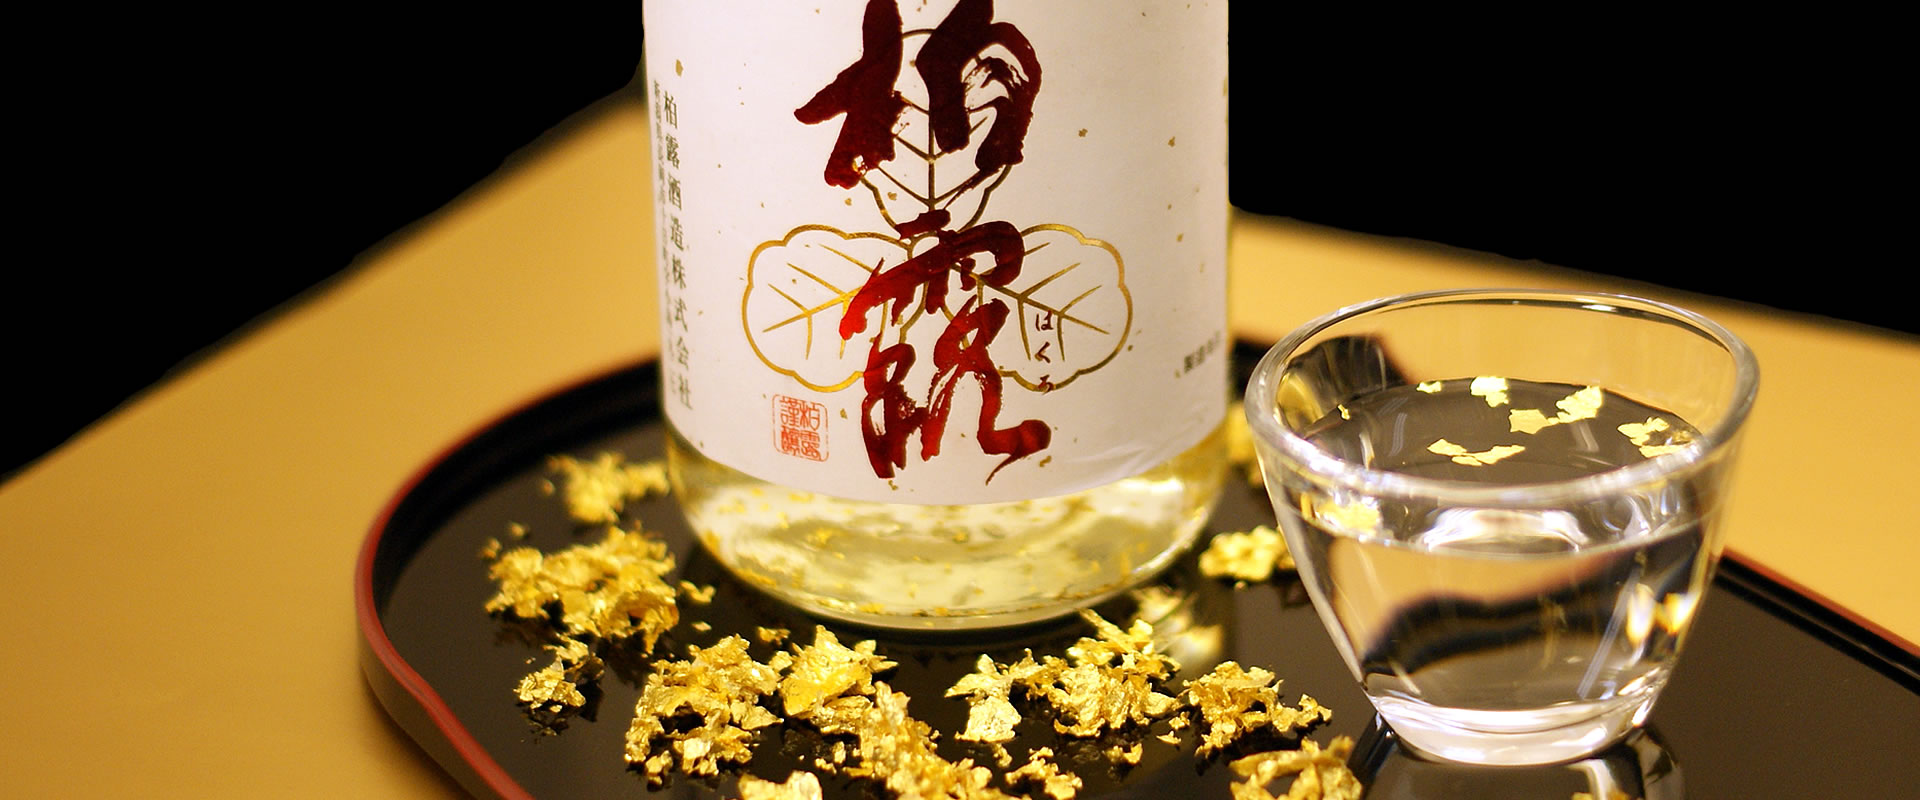 rượu sake vẩy vàng ngày tết